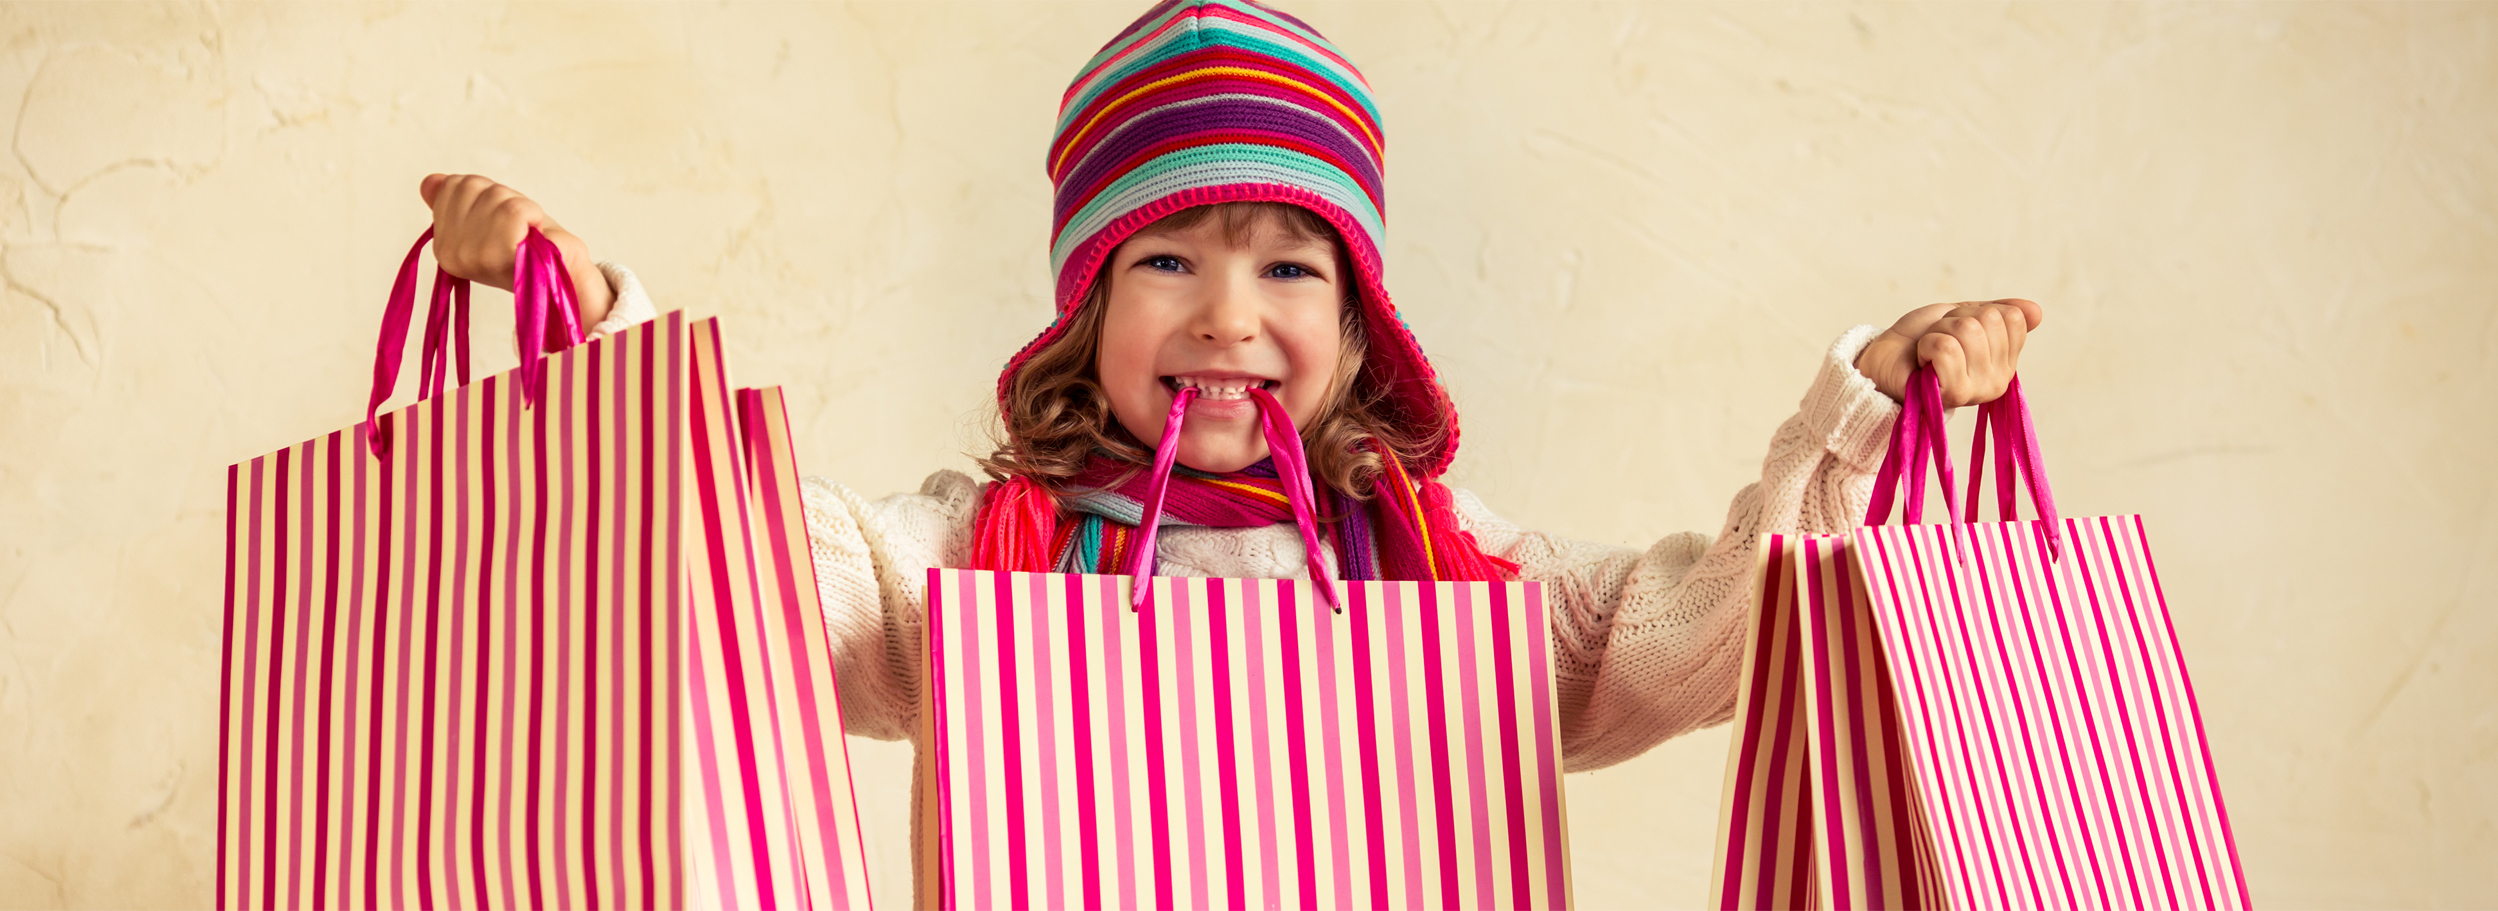 Cadeaux pour ses 4 ans (hiver) – Guide shopping